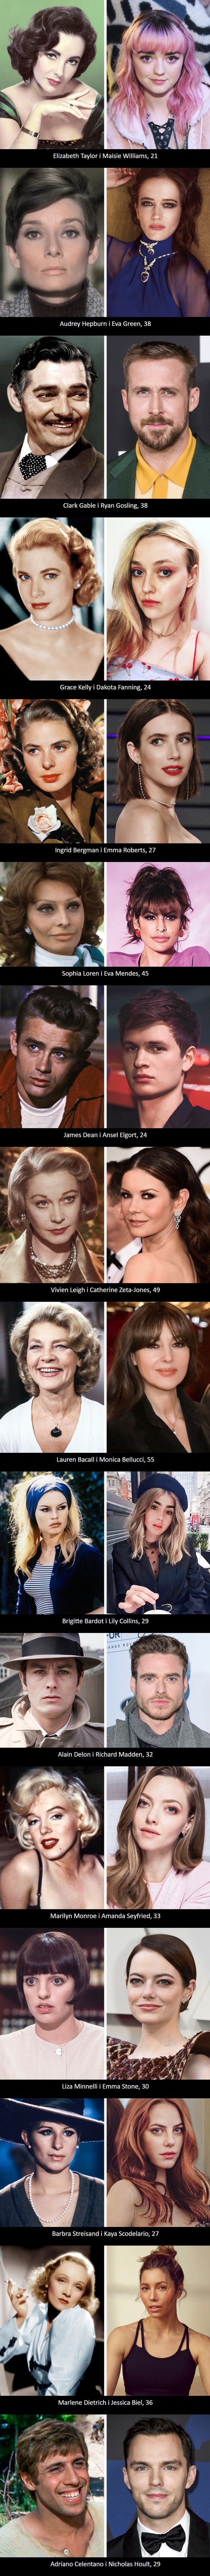 Iznenadit ćete se kad vidite kako su stari glumci izgledali u usporedbi s današnjim glumcima jednakih godina